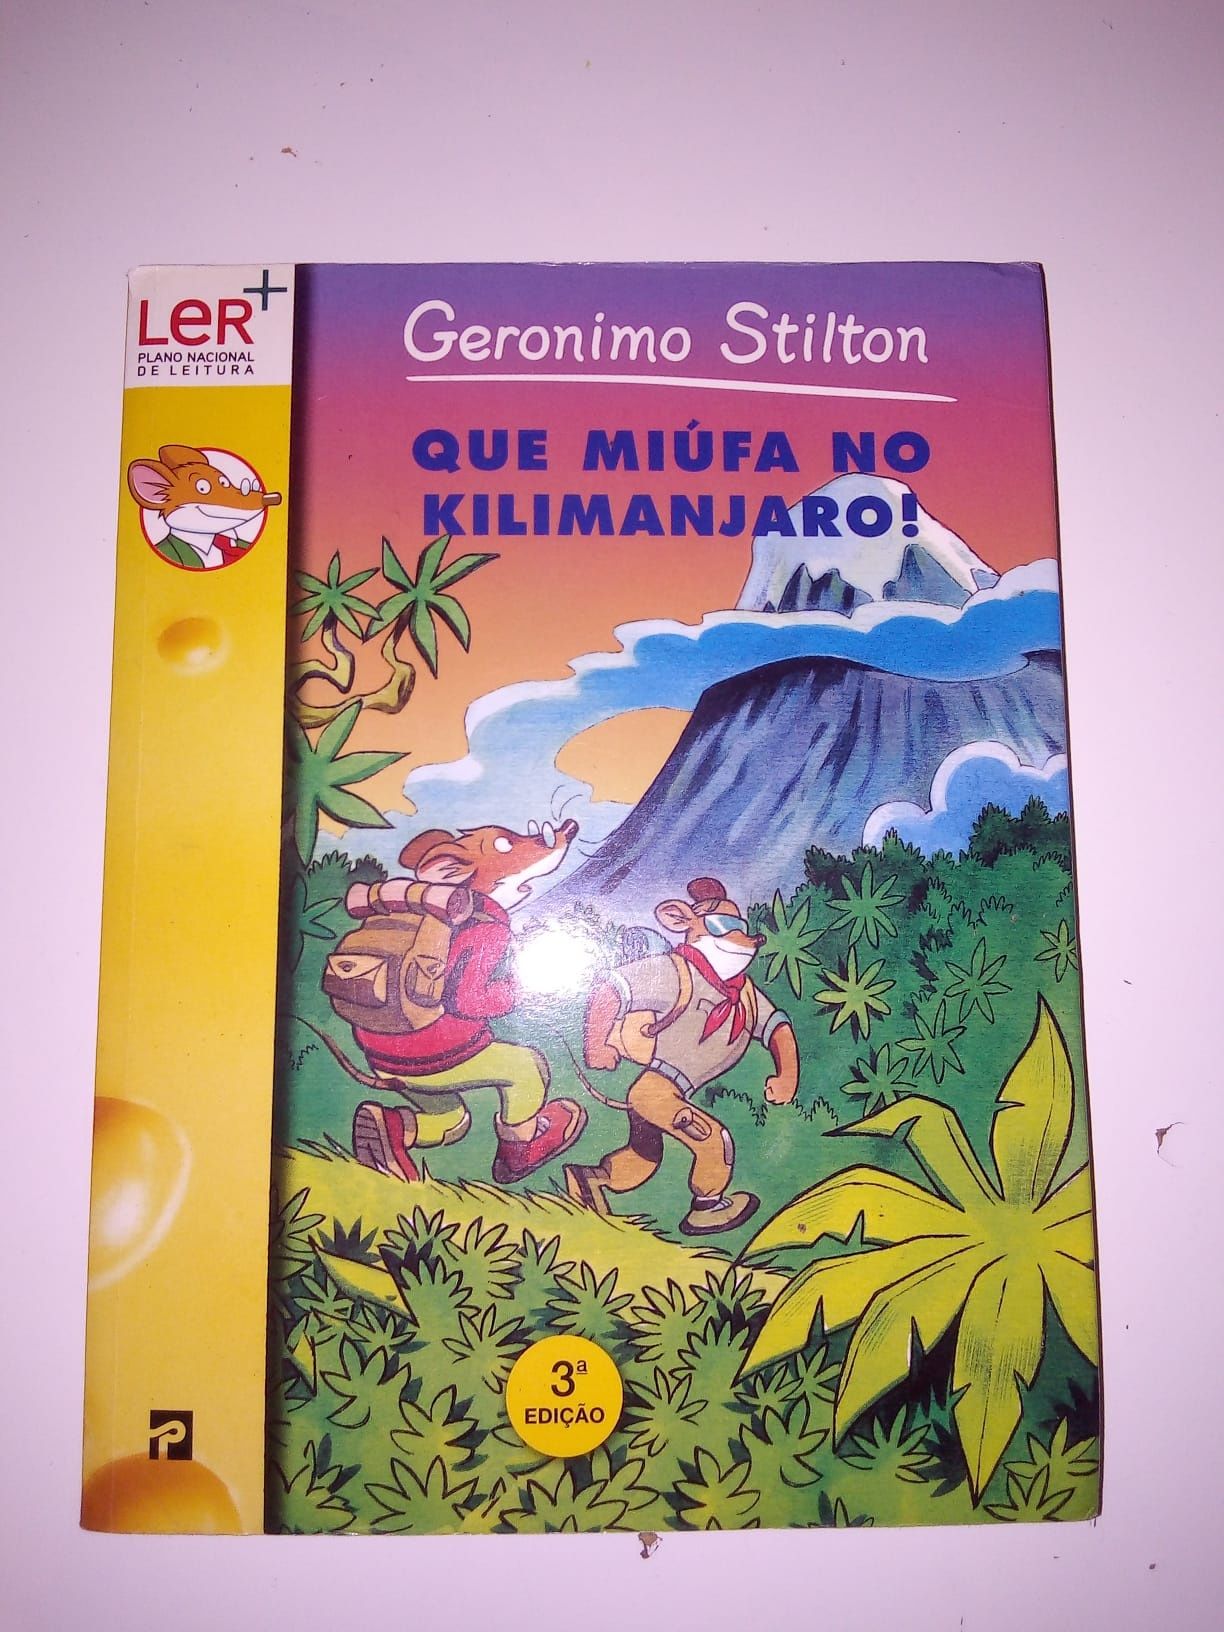 Geronimo stilton 5 livros- vendo também em separado